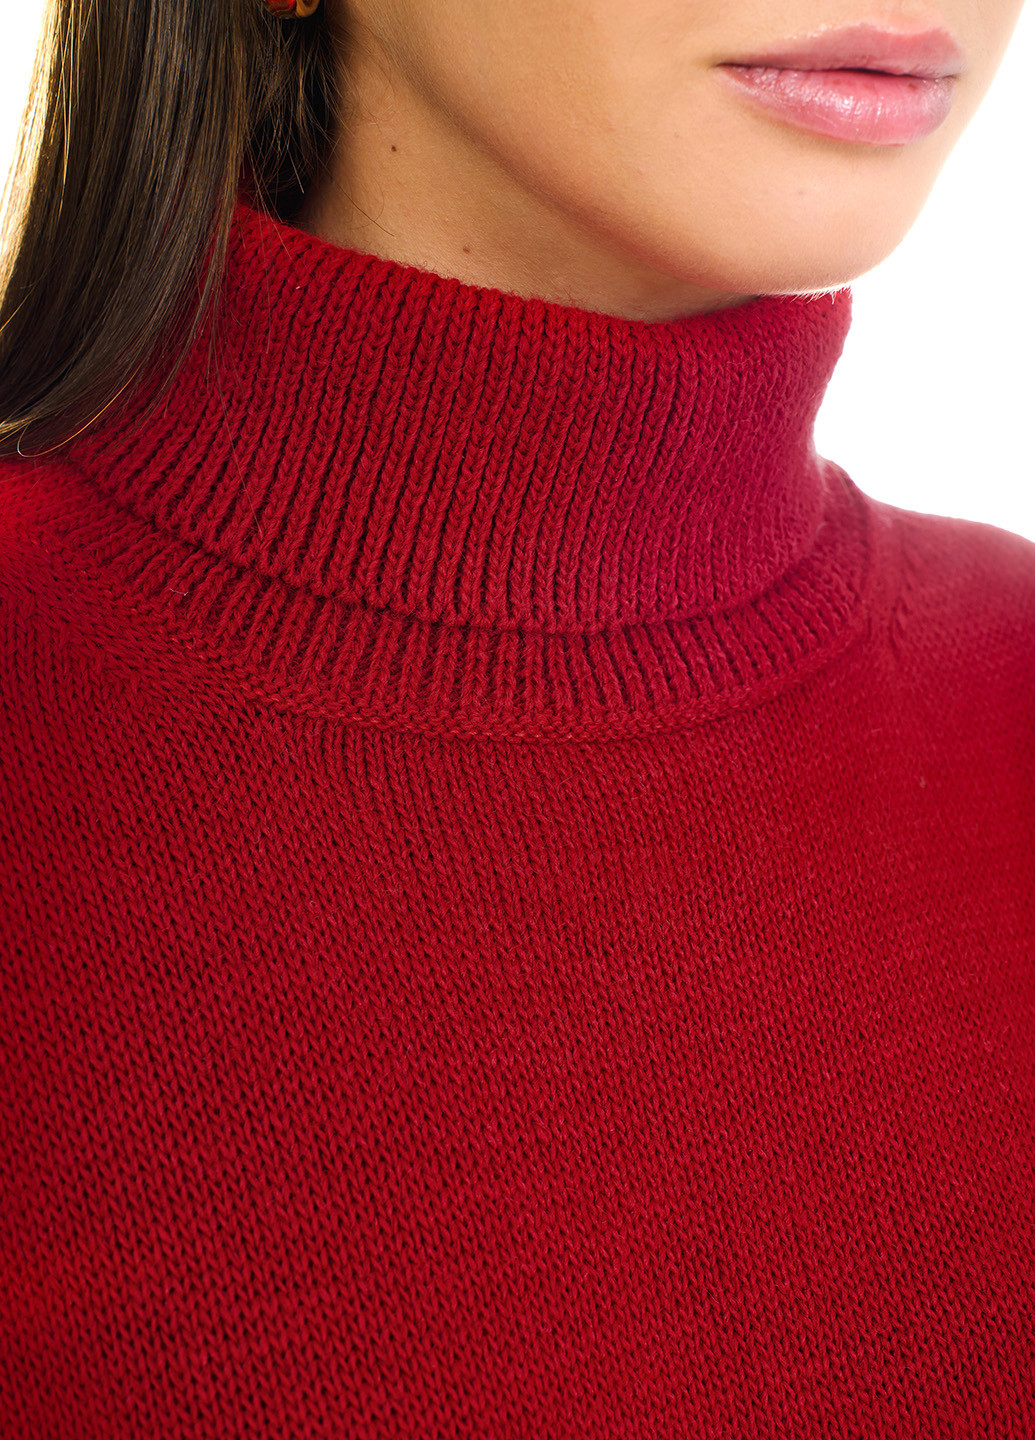 Красный свитер оверсайз с высоким воротником-стойка. SVTR